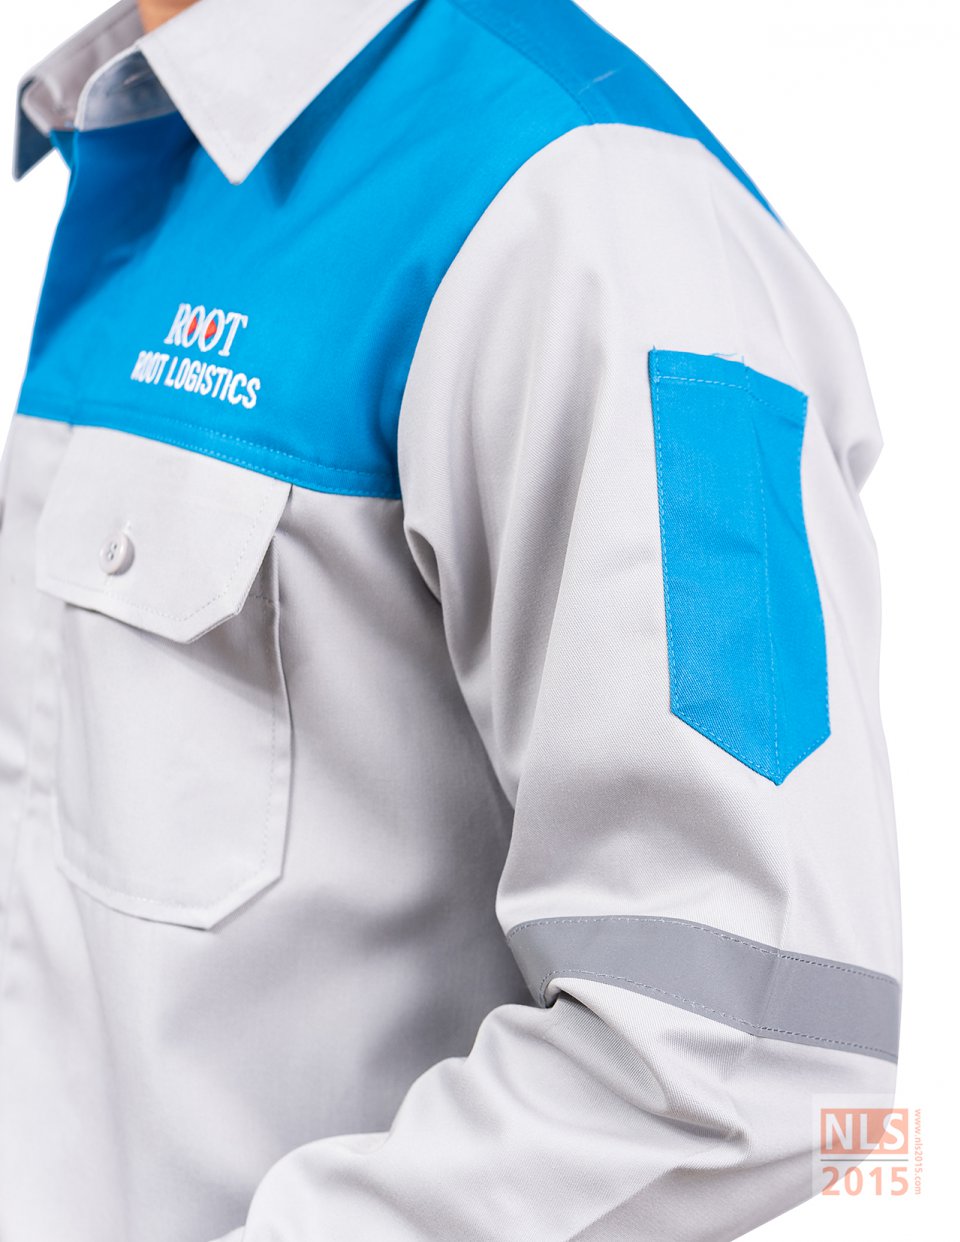 แบบชุดยูนิฟอร์มพนักงานแขนยาวบริษัท Root logistics / นลินสิริ 2015 รับตัดรับผลิตชุด Uniform พนักงานทุกประเภทรูปที่ 